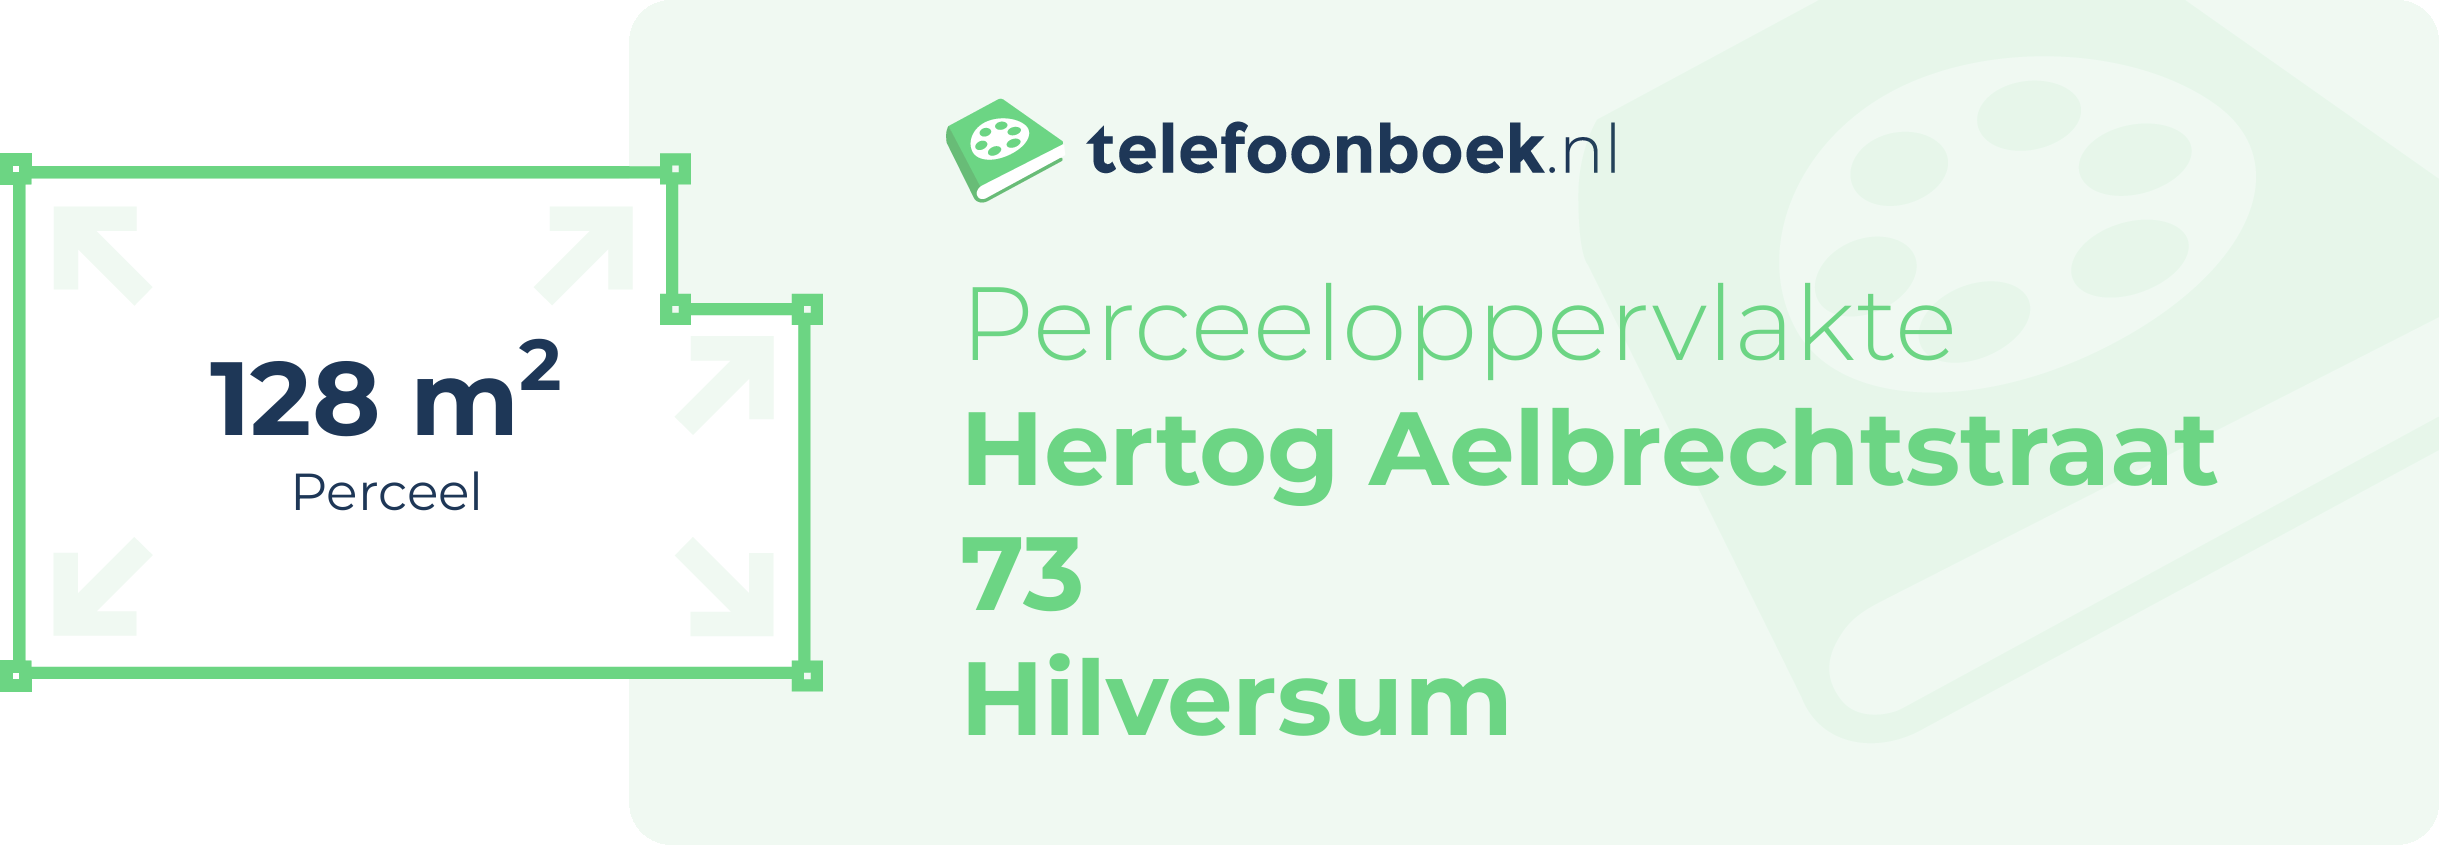 Perceeloppervlakte Hertog Aelbrechtstraat 73 Hilversum